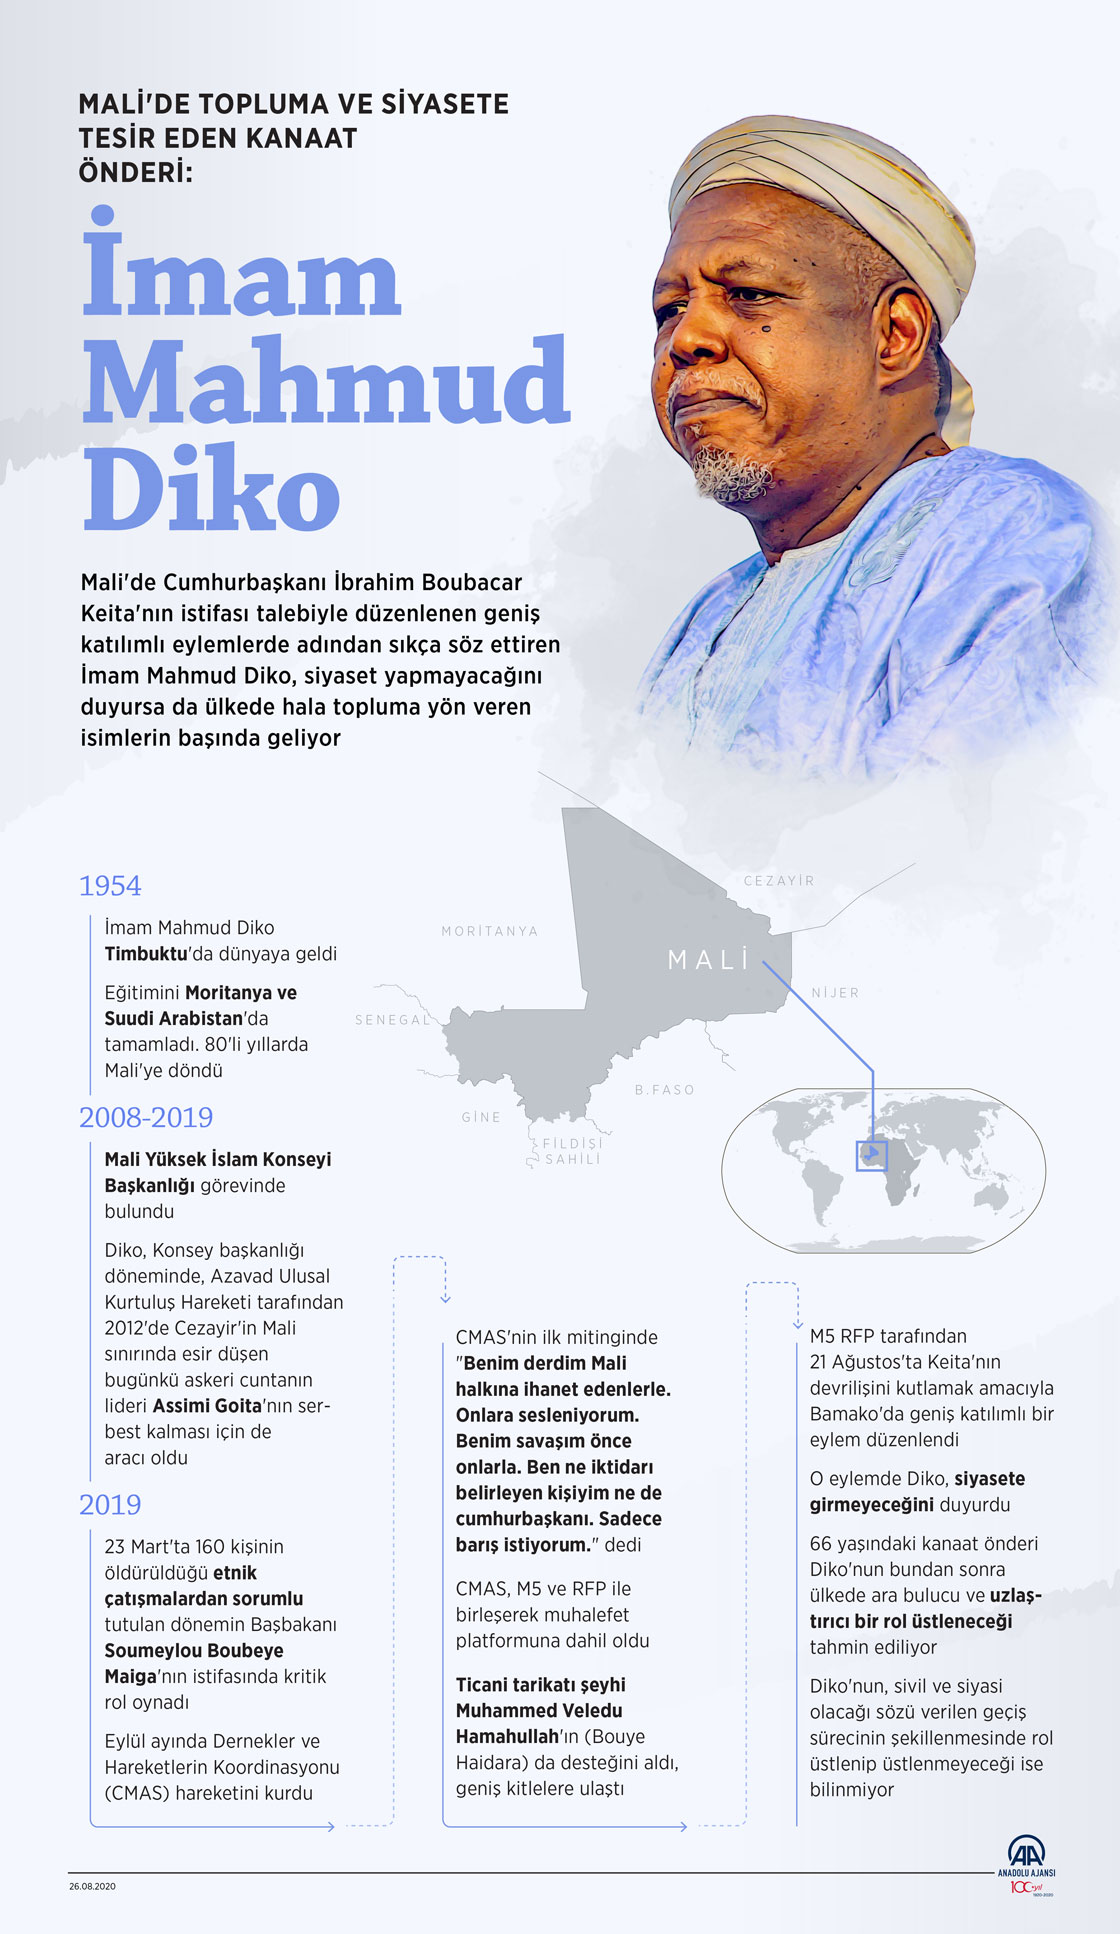 Mali'de topluma ve siyasete tesir eden kanaat önderi: İmam Mahmud Diko